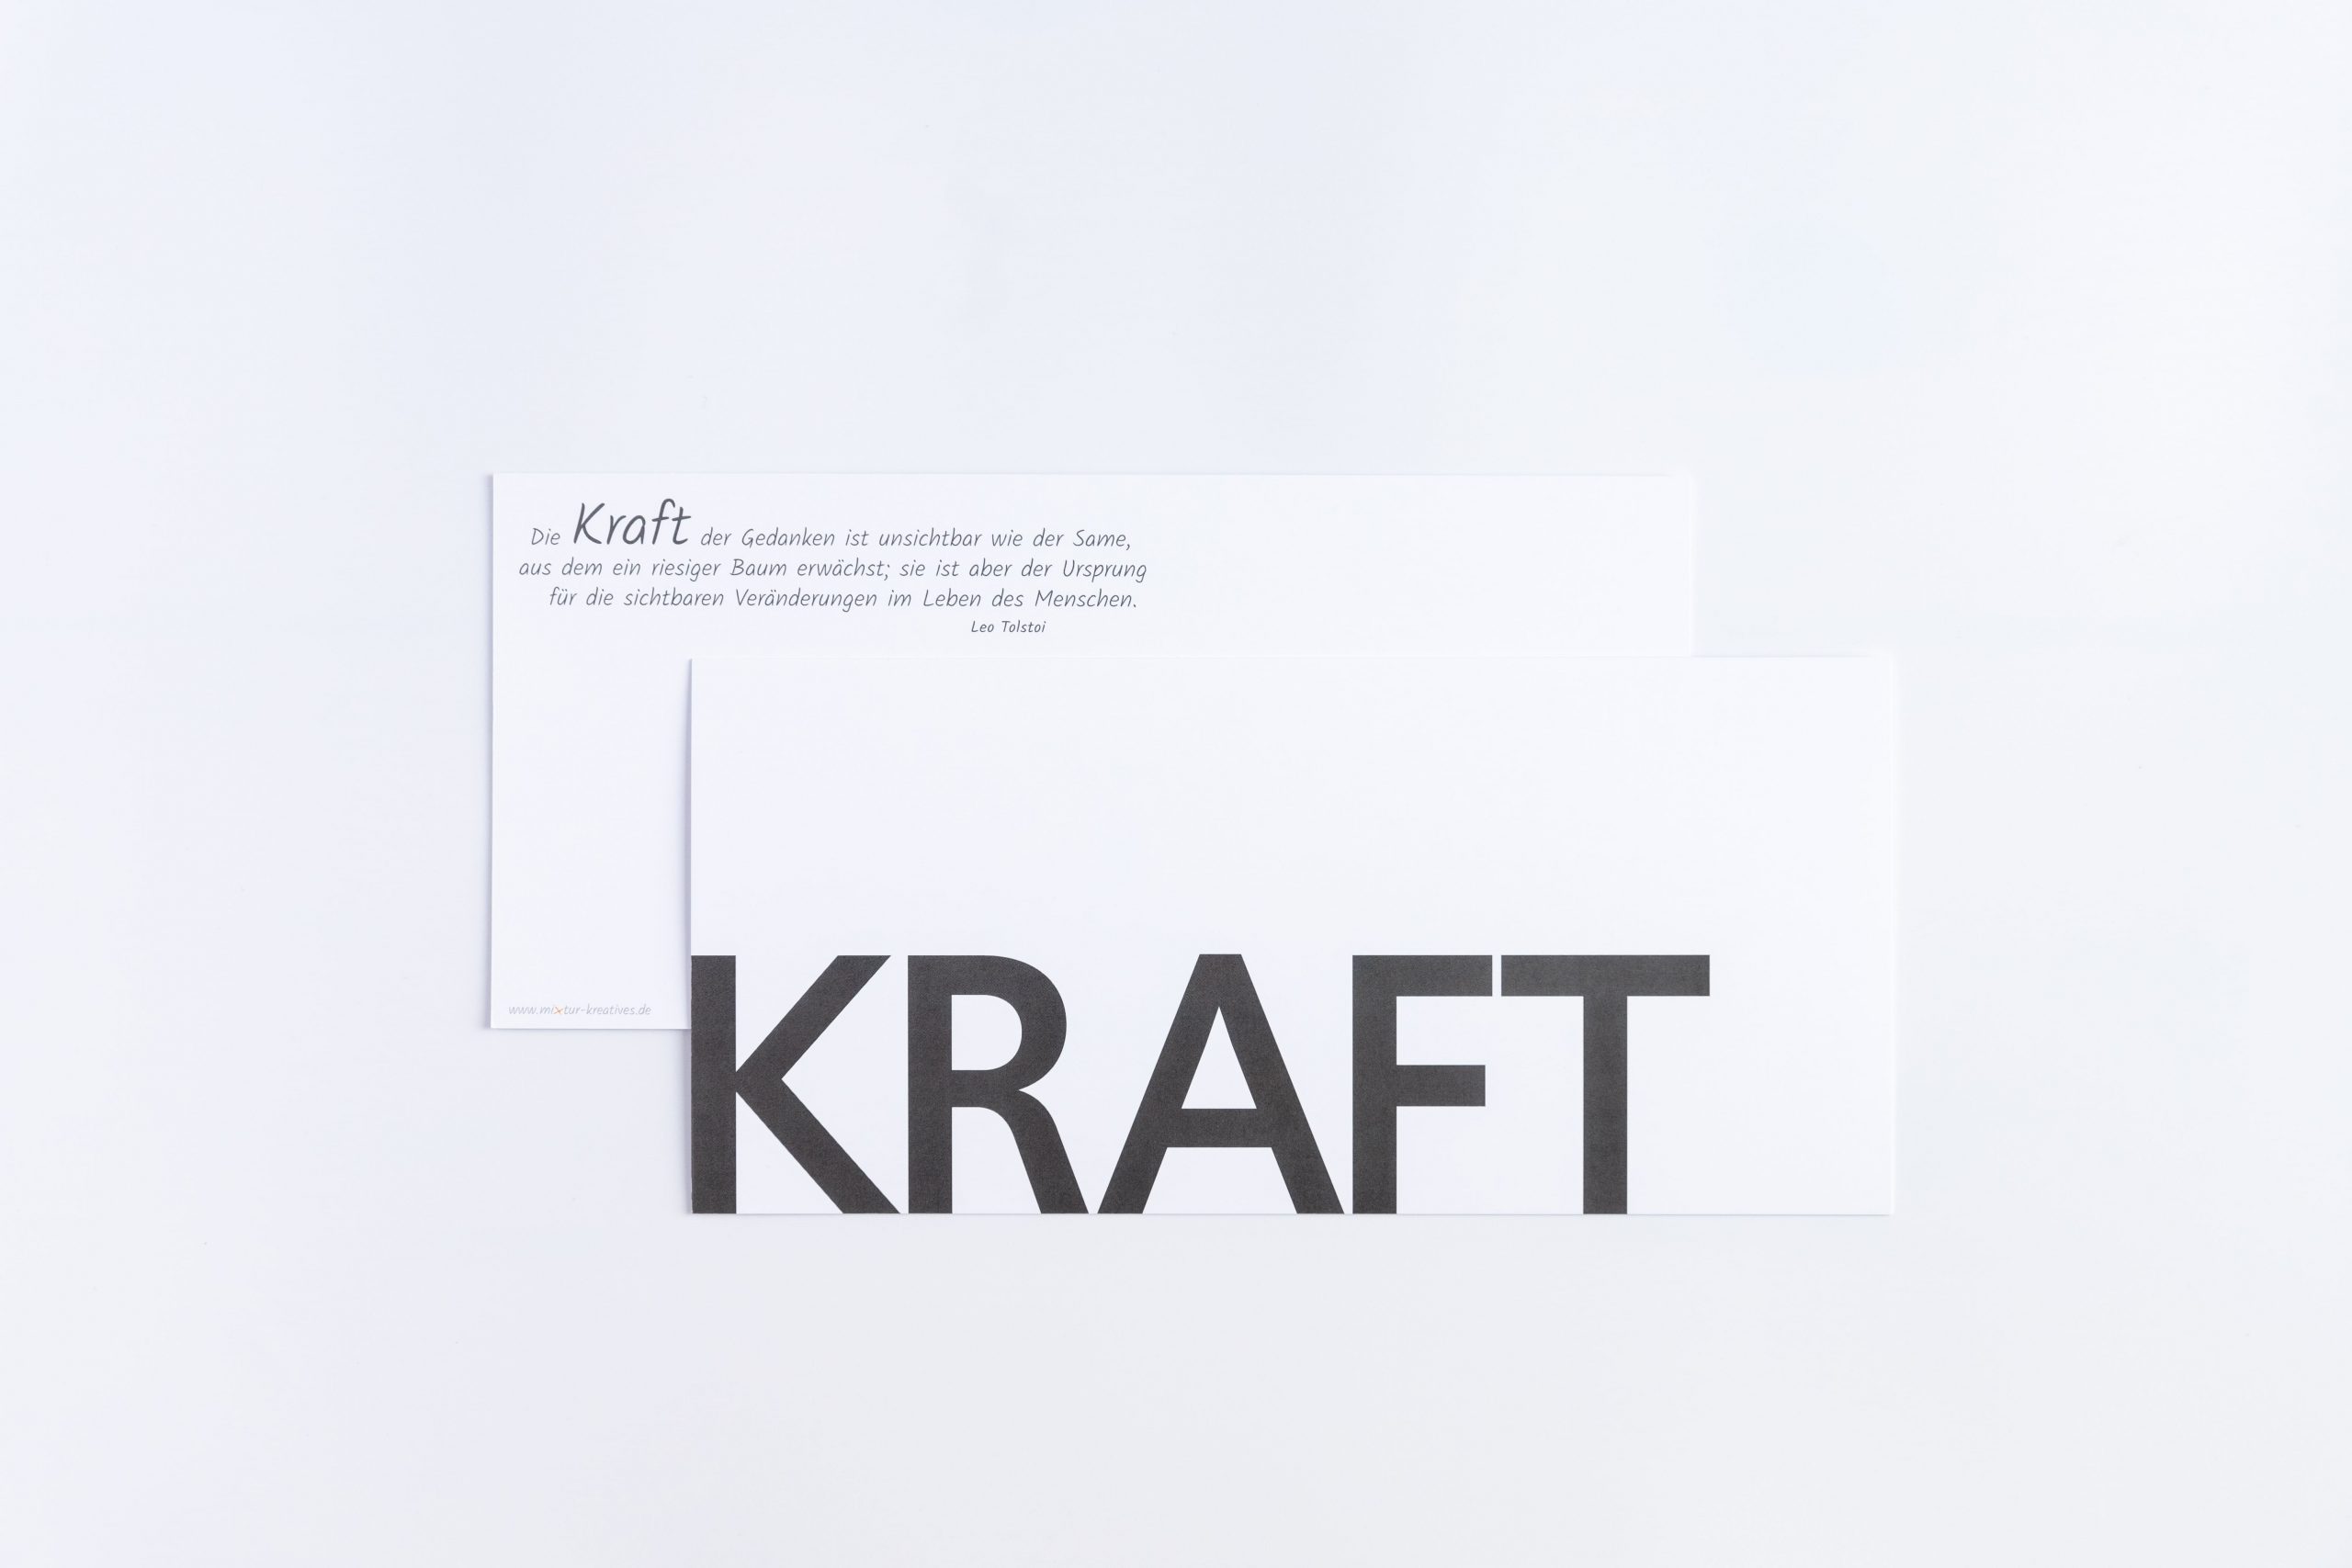 Grußkarte "KRAFT" mit anthrazitfarbenen Briefumschlag und Rückseite